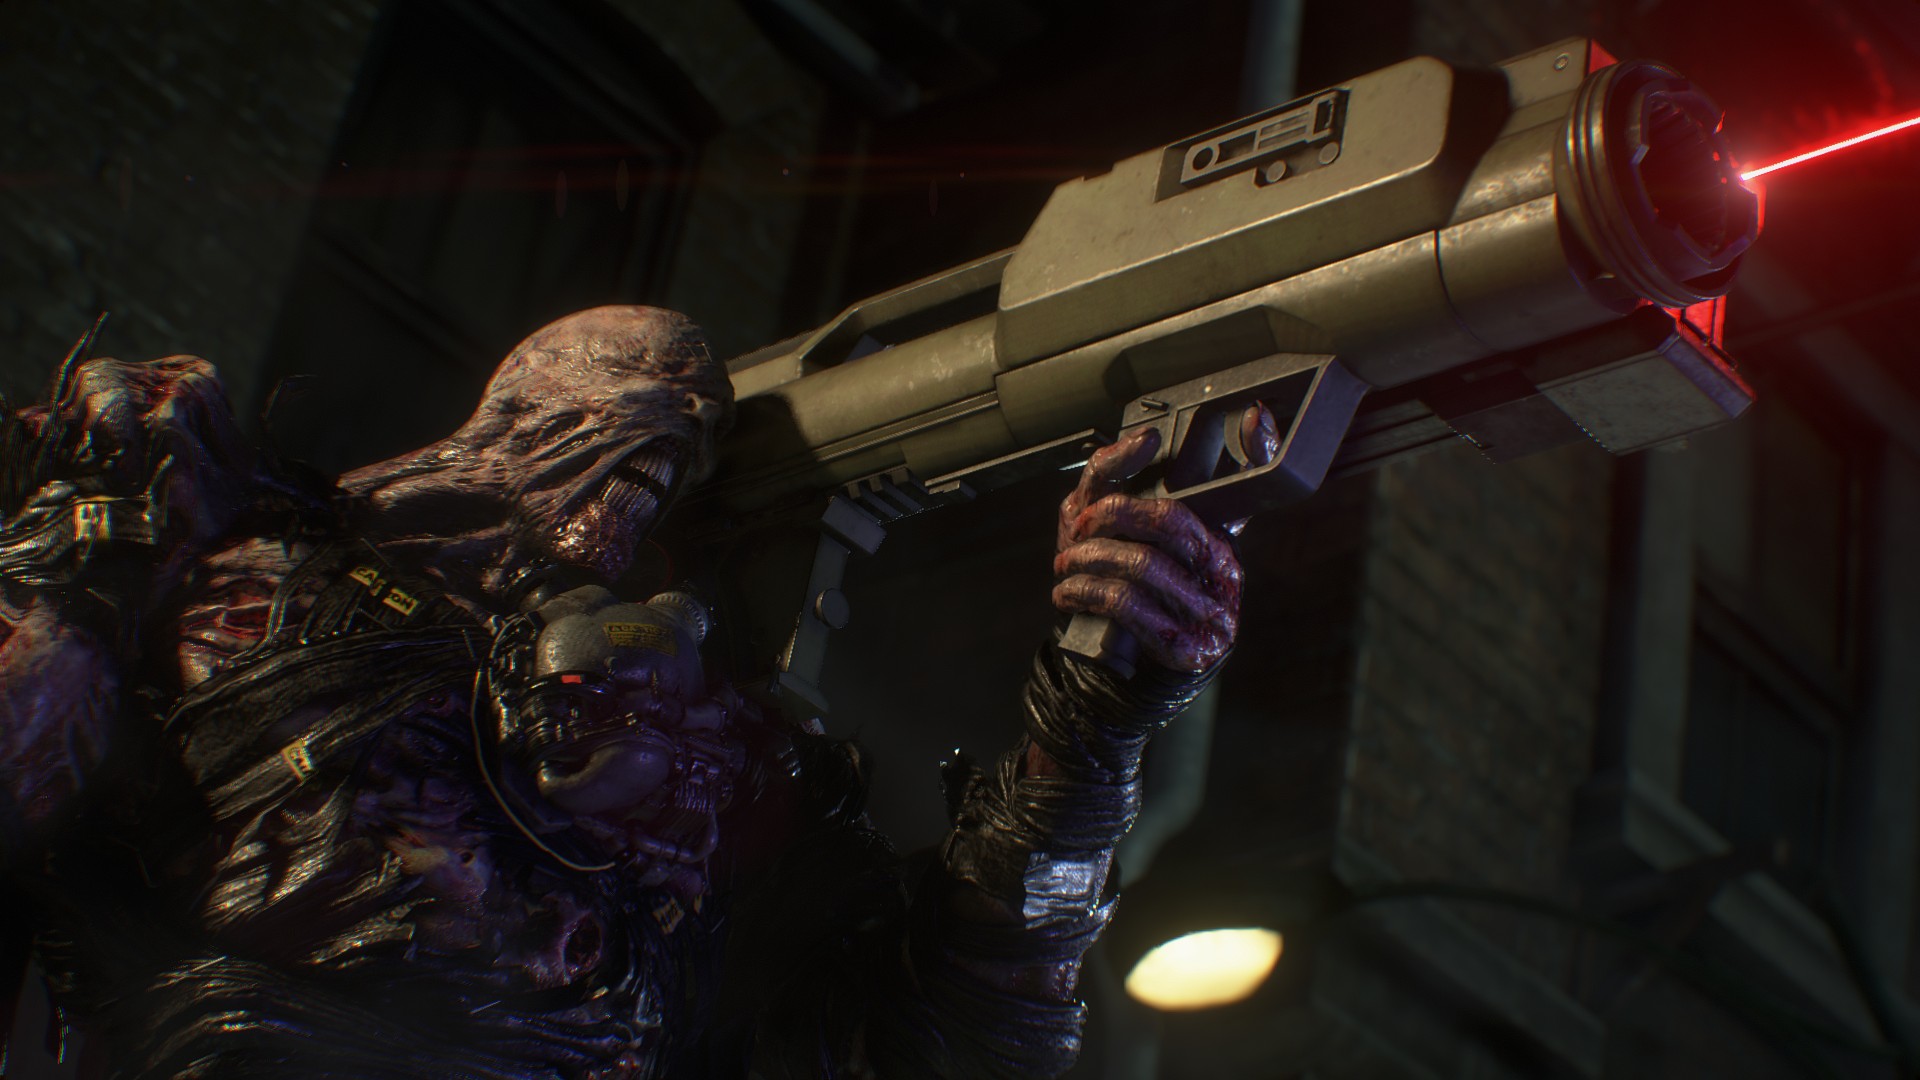 New Resident Evil Remake Image Show Nemesis In Terrifying